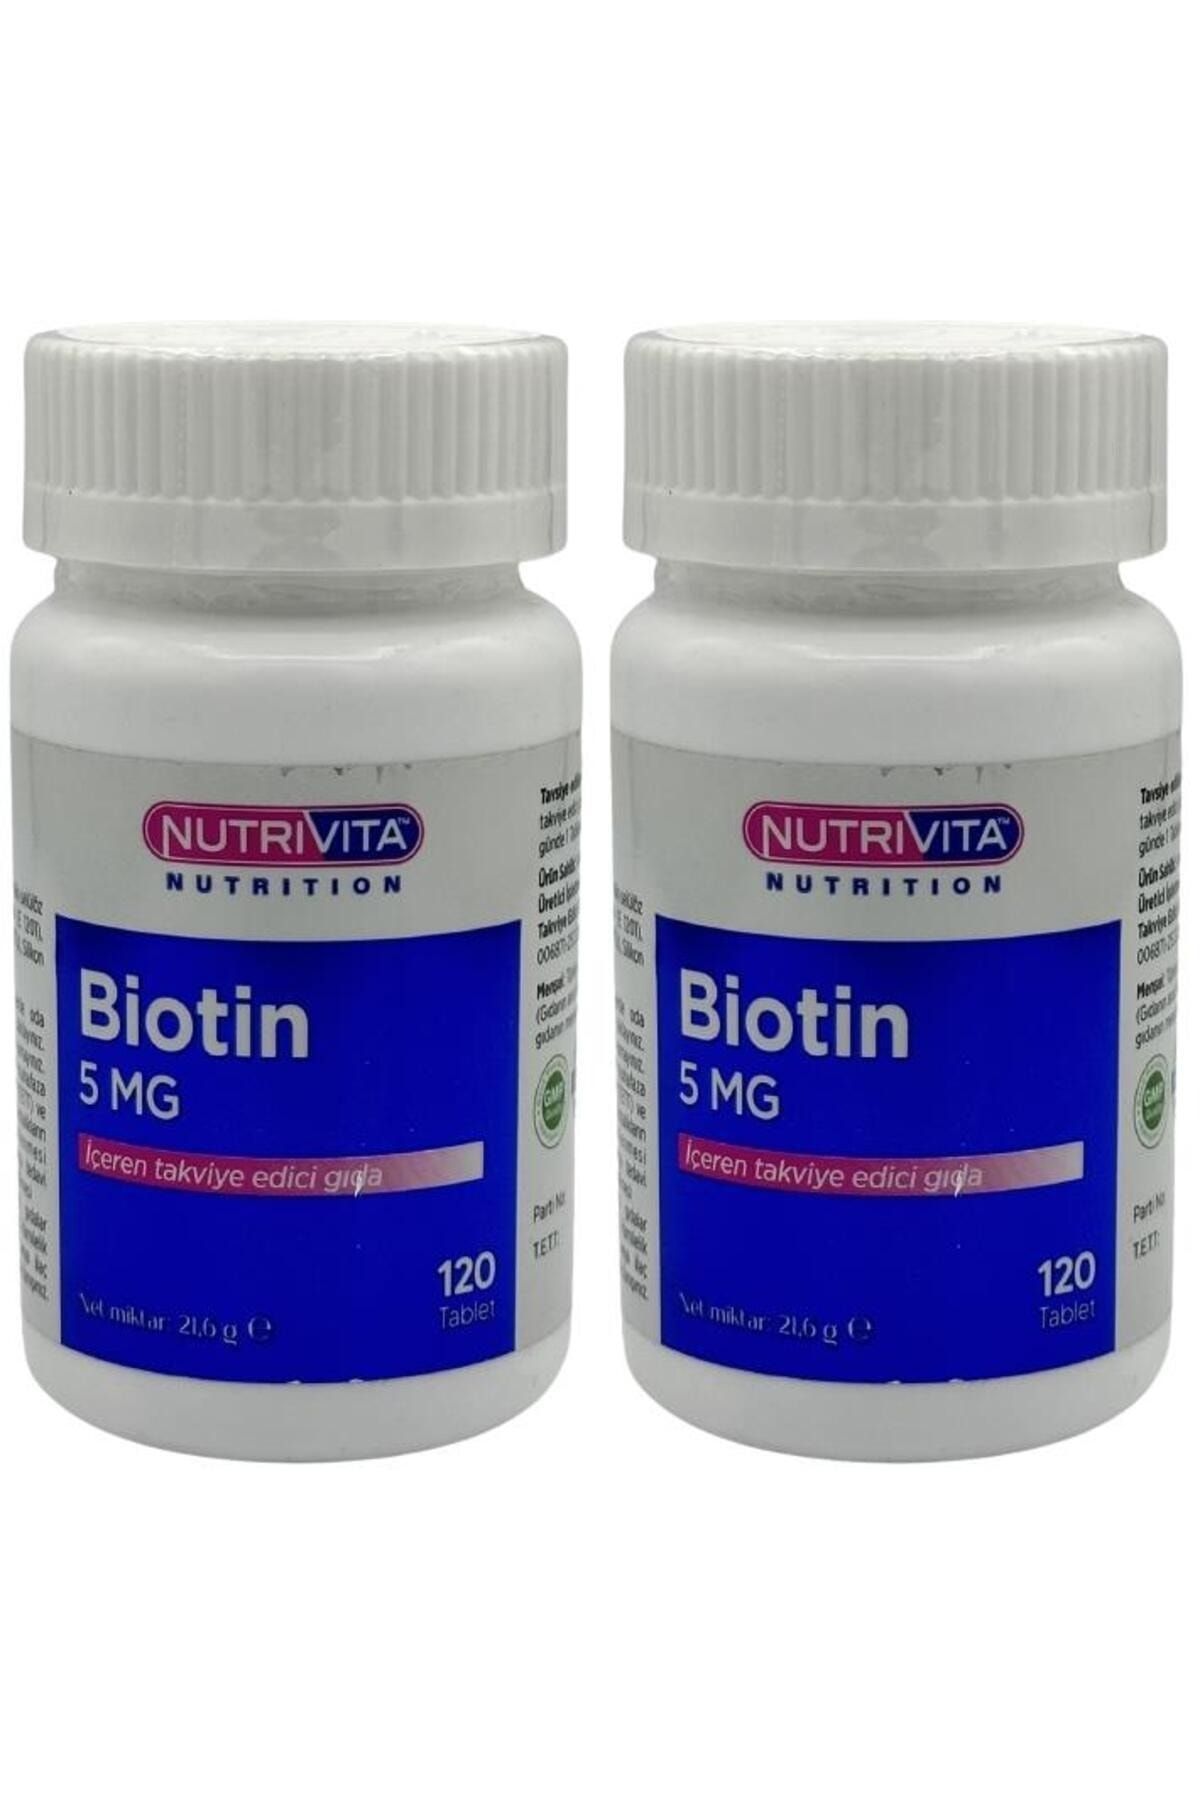 Nutrivita Nutrition Biotin 5 Mg 2x120 Tablet